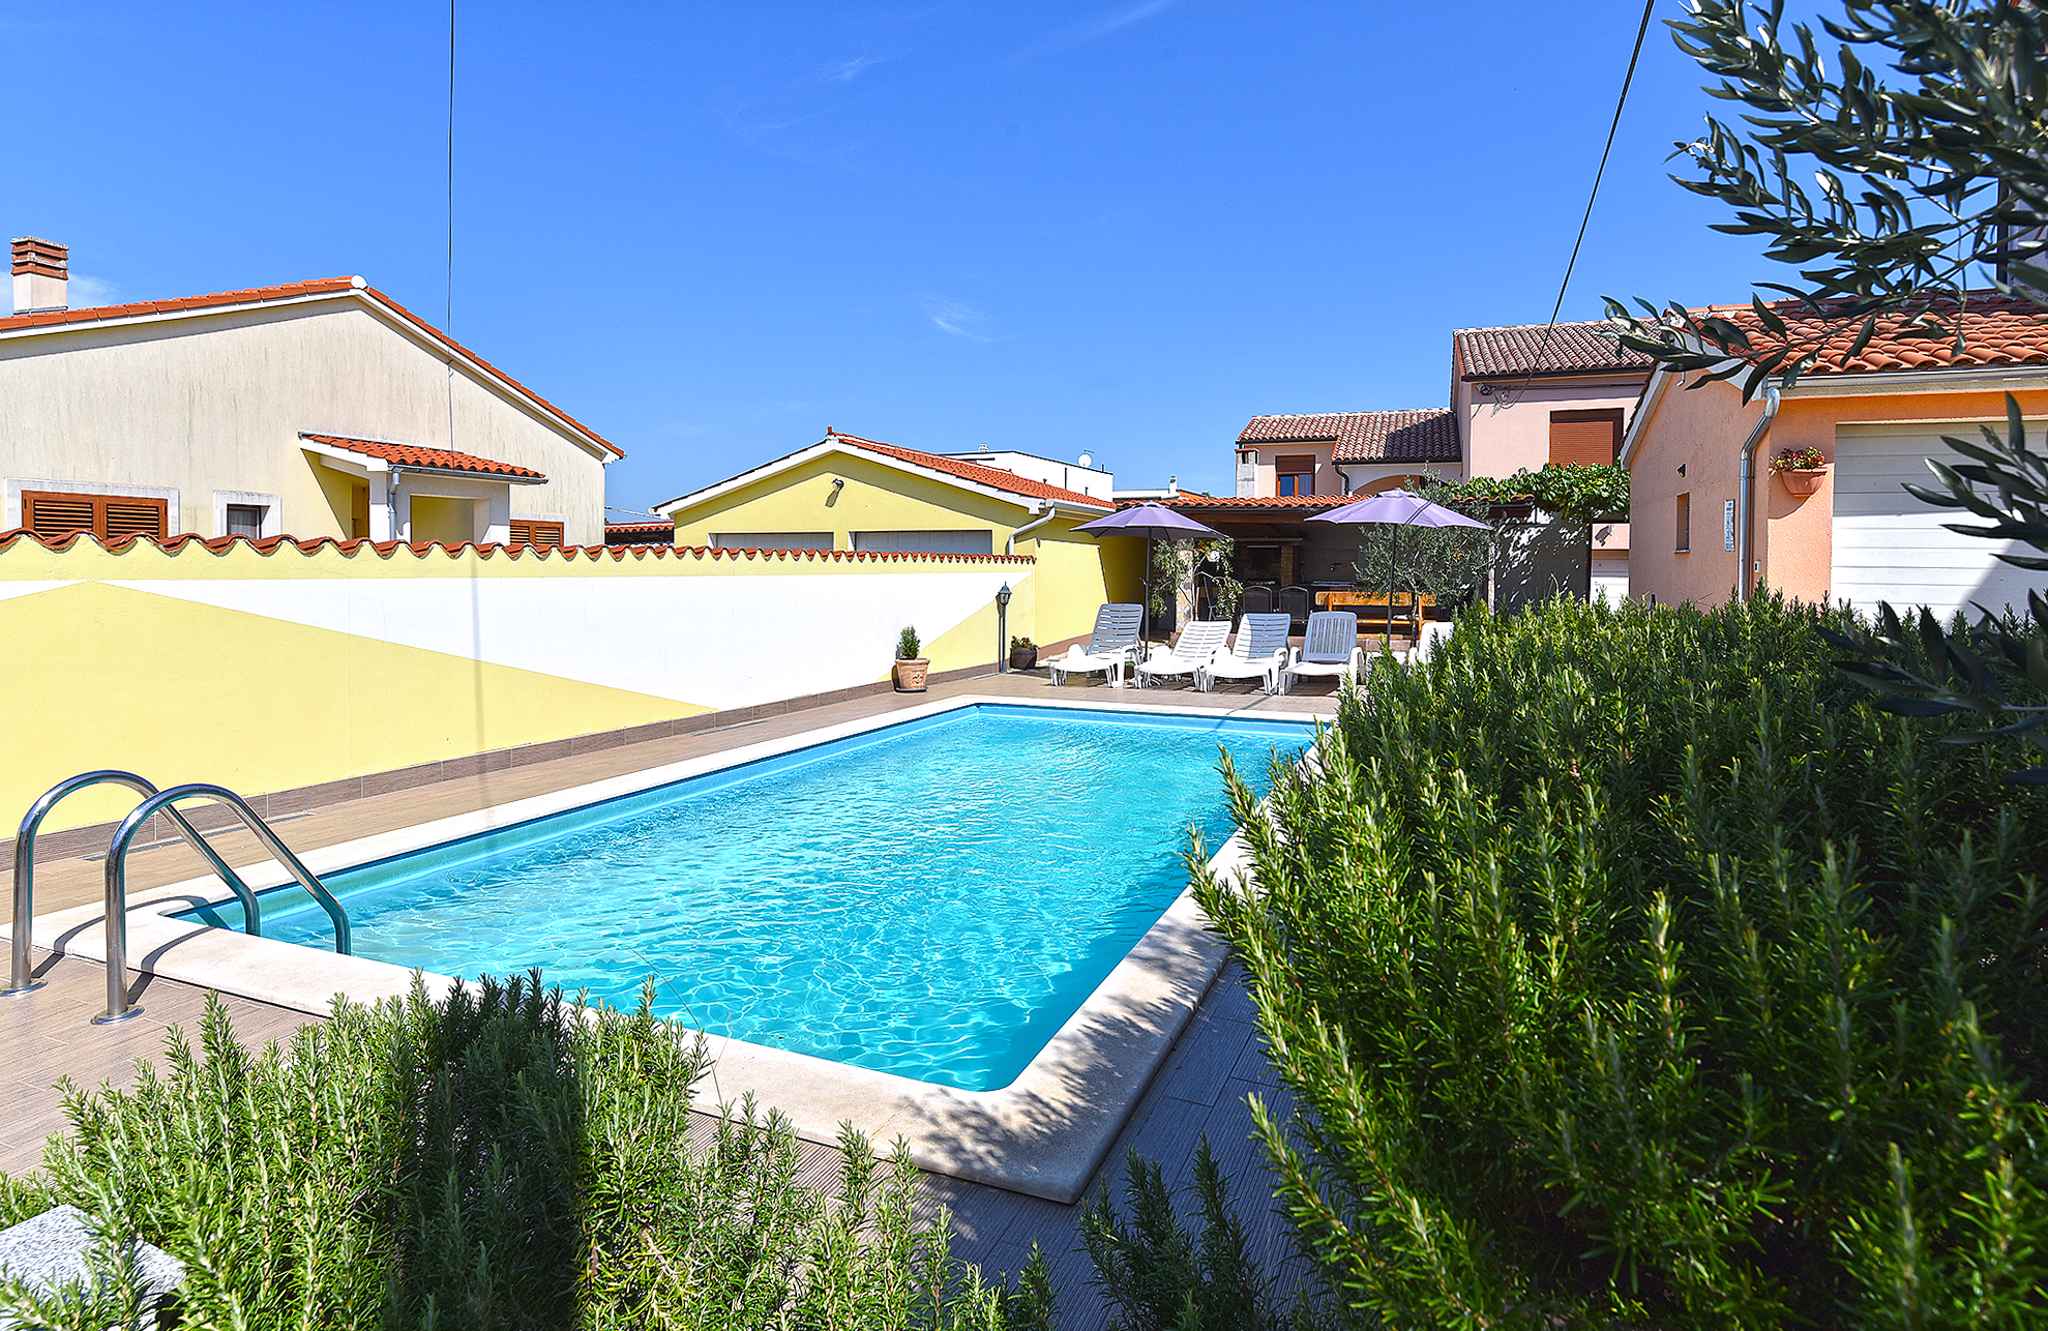 Villa mit Swimmingpool und Spielraum im Garten Ferienhaus in Kroatien